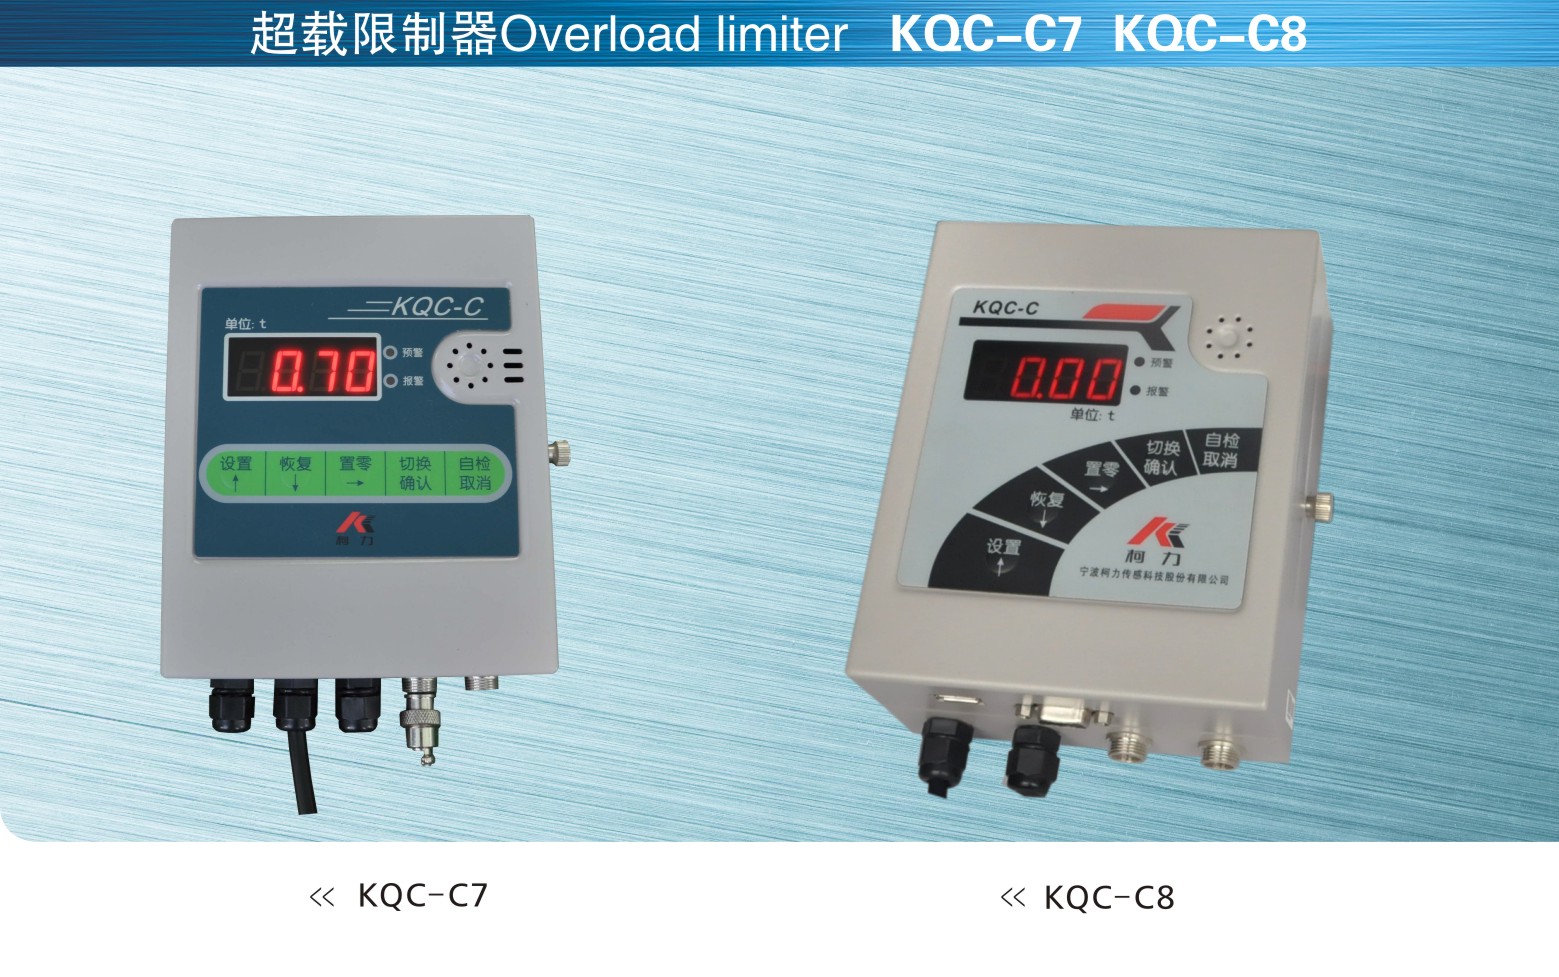 柯力keli KQC-C7和KQC-C8超载限制器